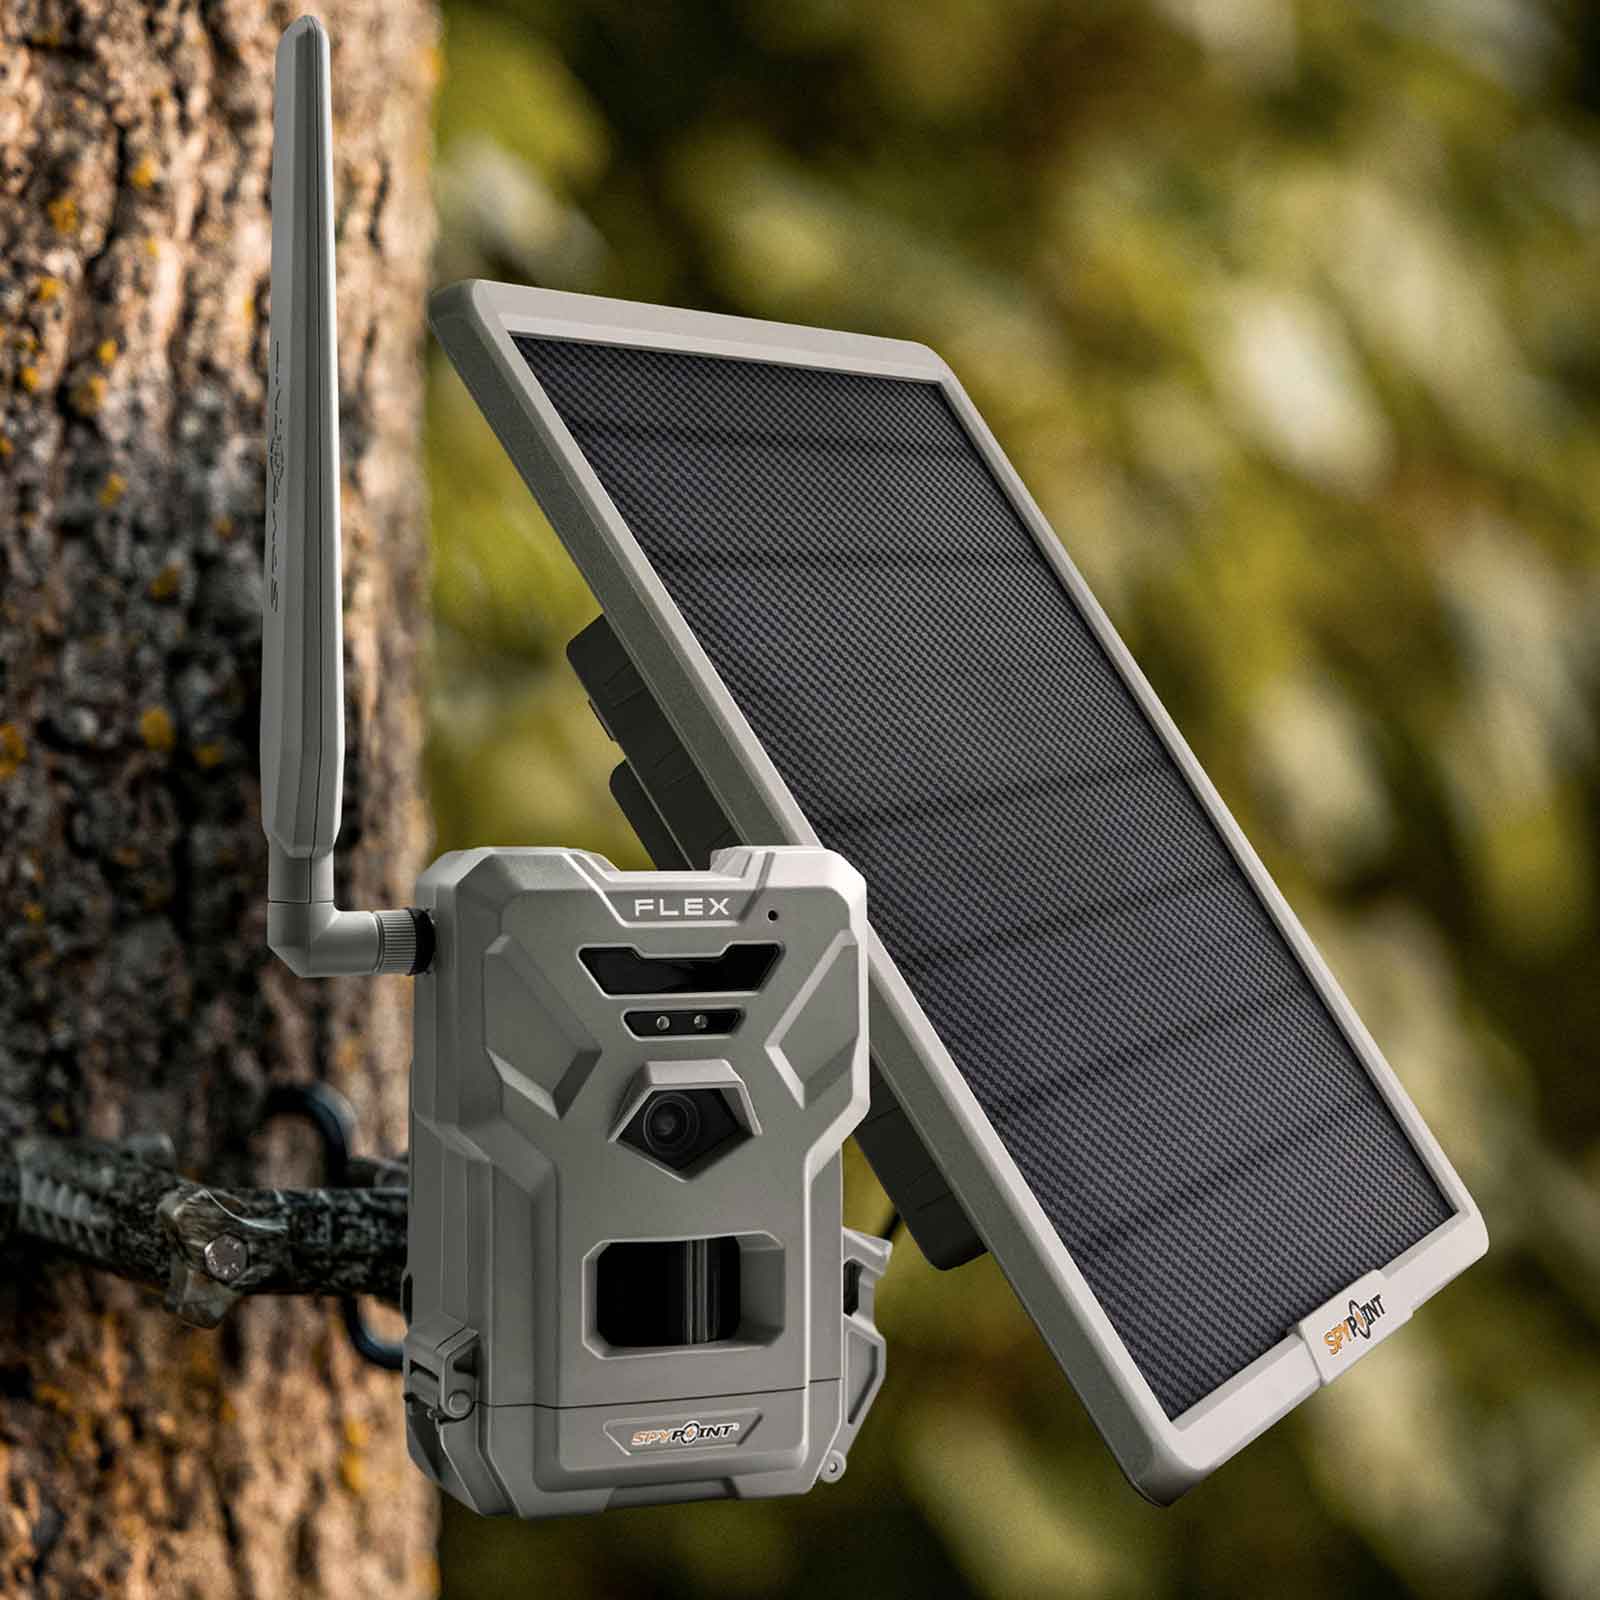 SpyPoint Pannello solare con batteria al litio